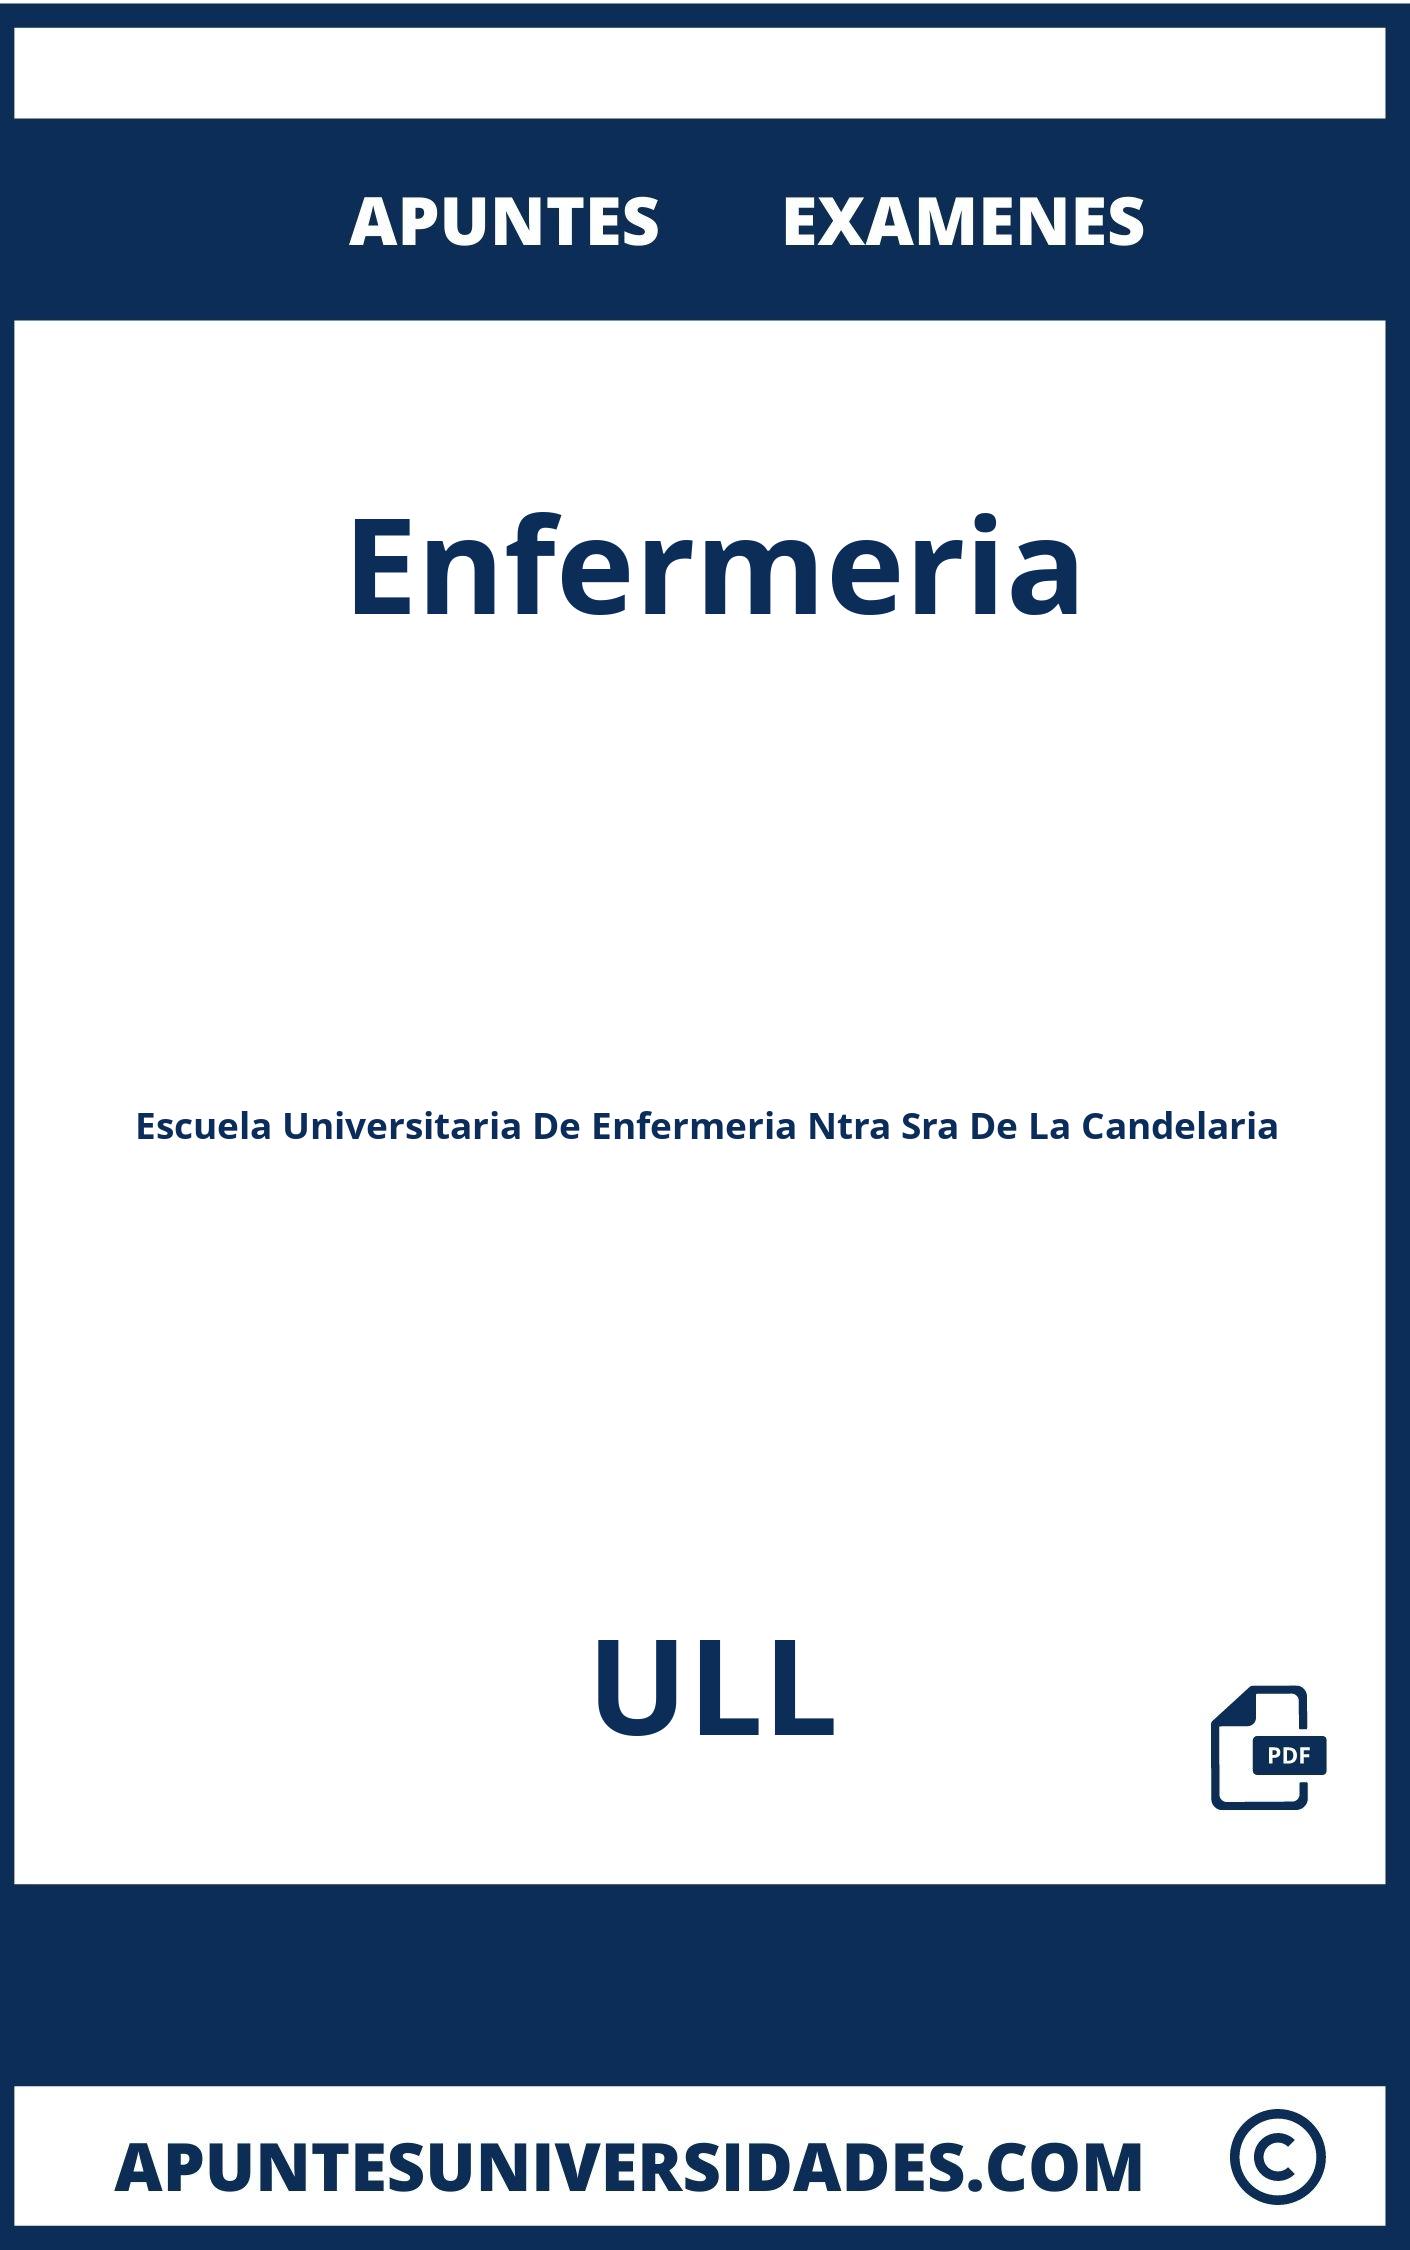 Examenes y Apuntes de Enfermeria ULL